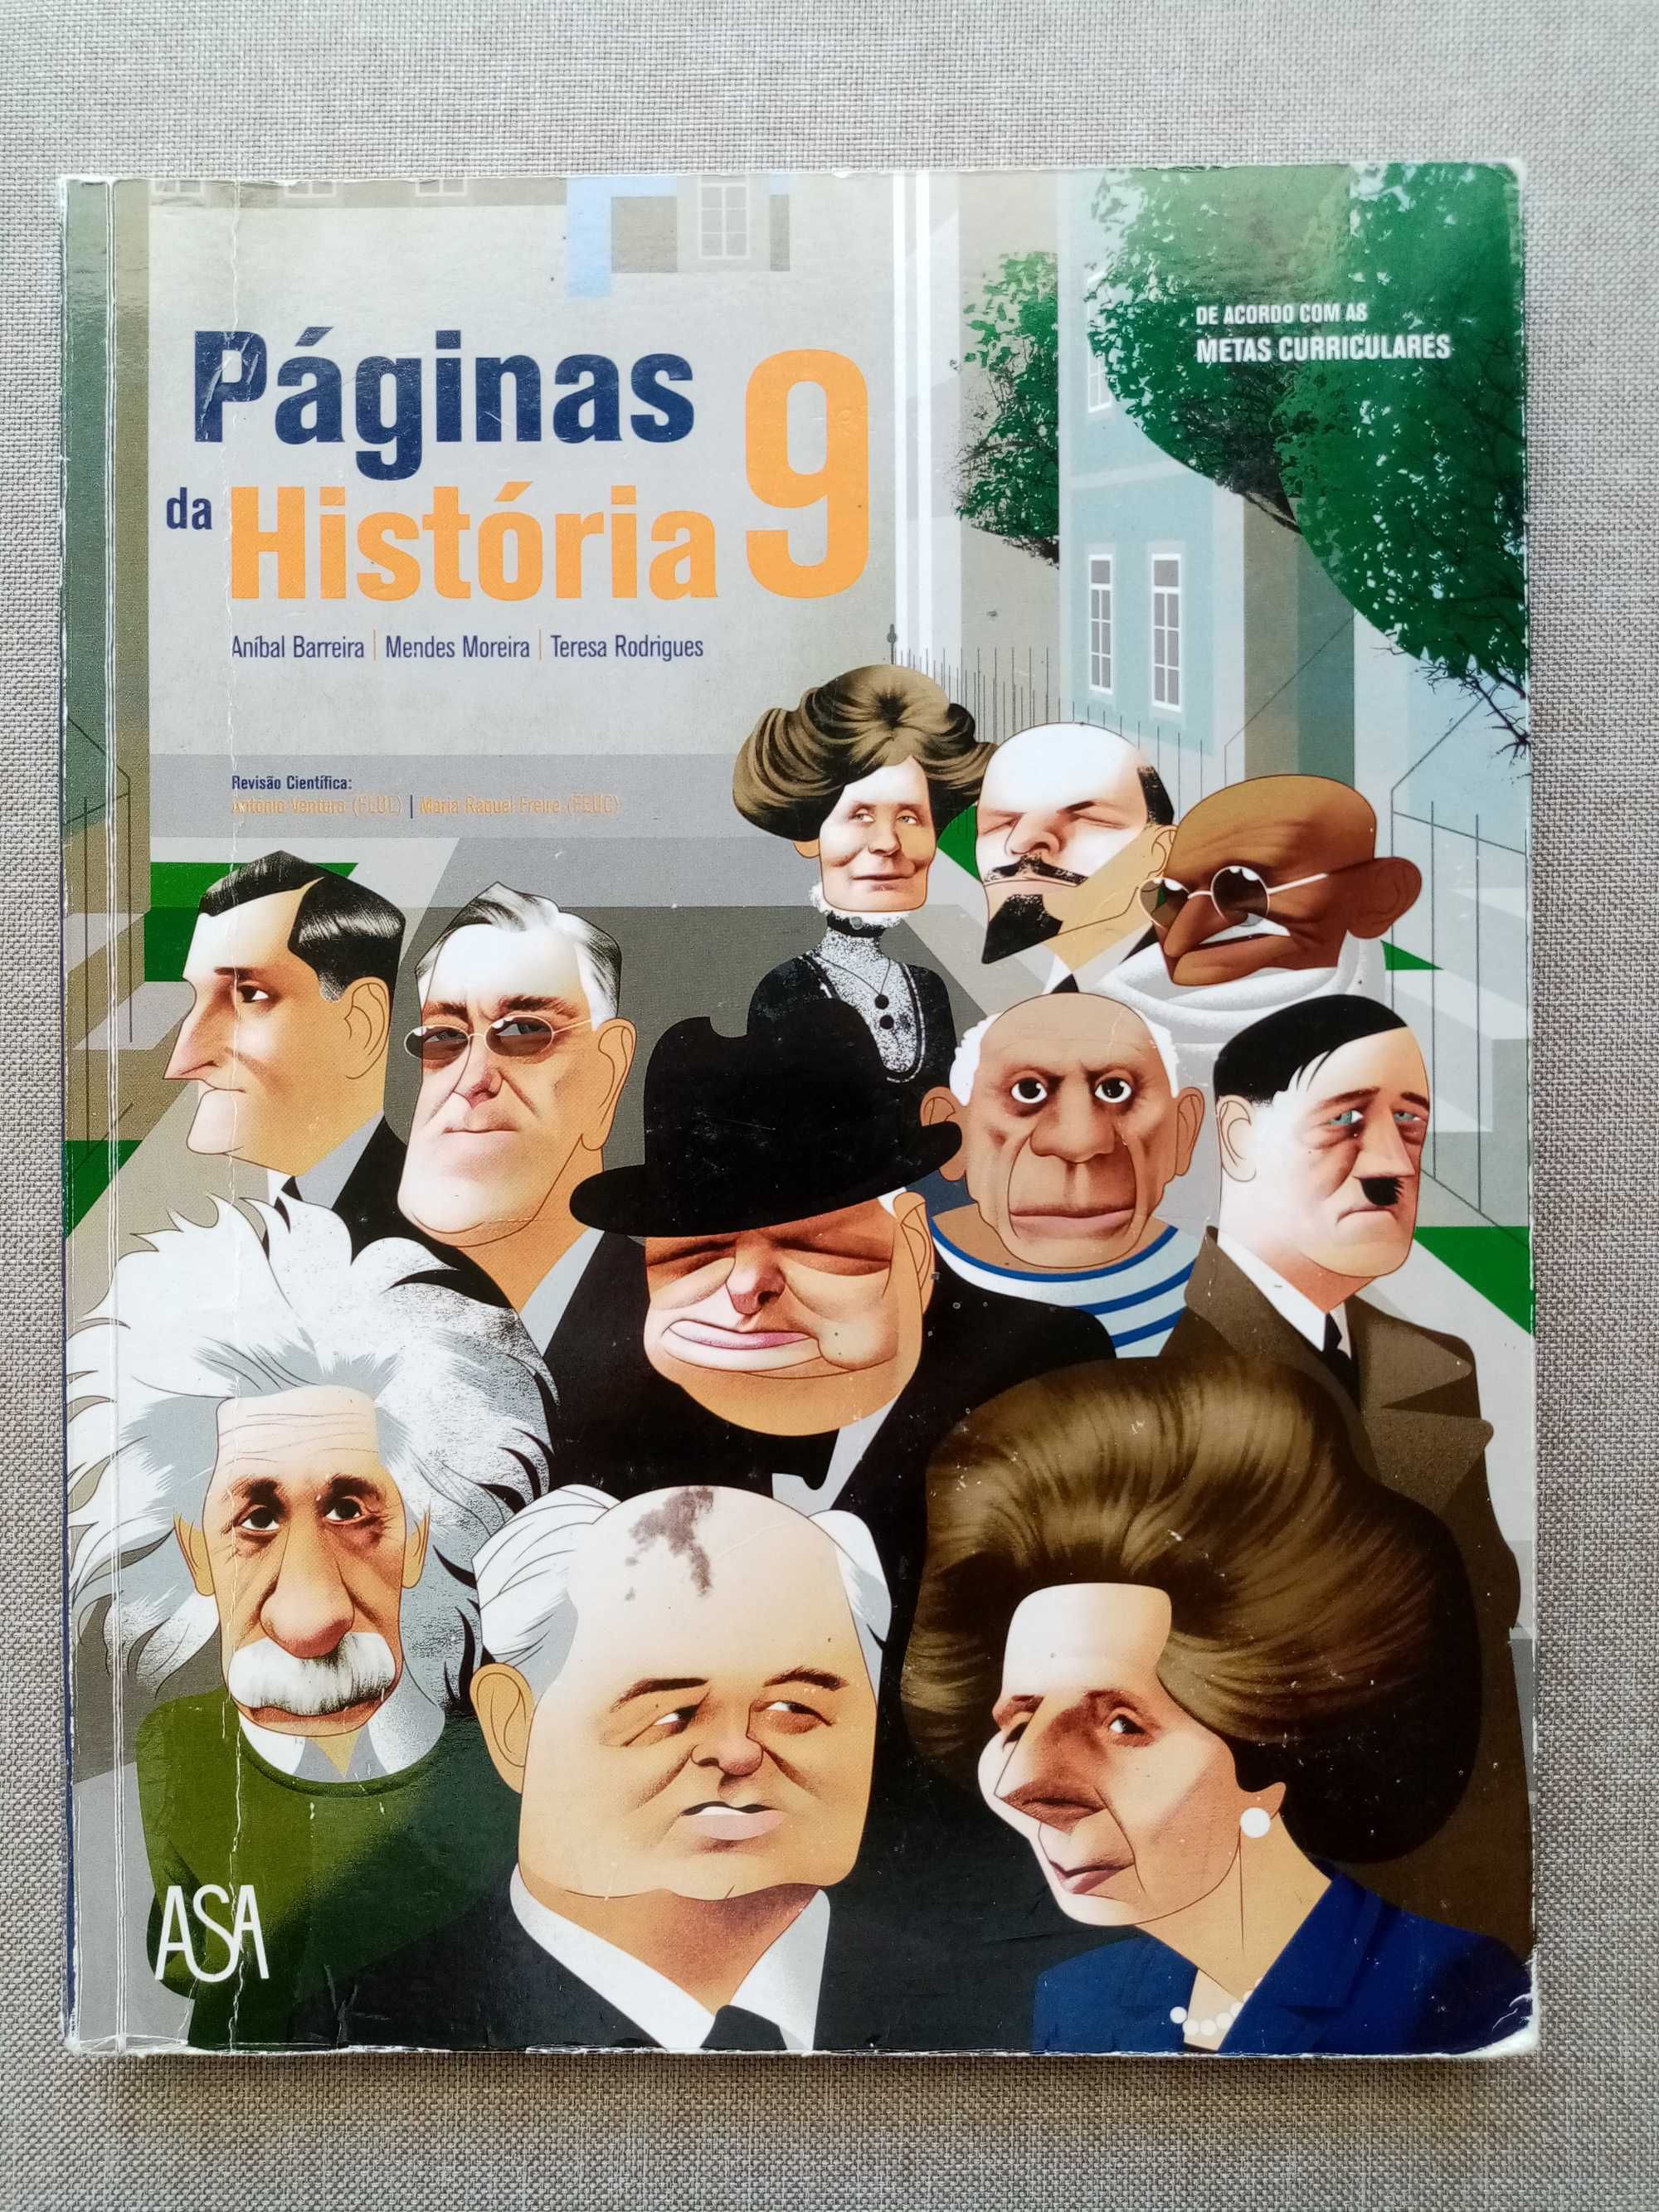 Manual de História 9º ano- "Páginas da história 9"